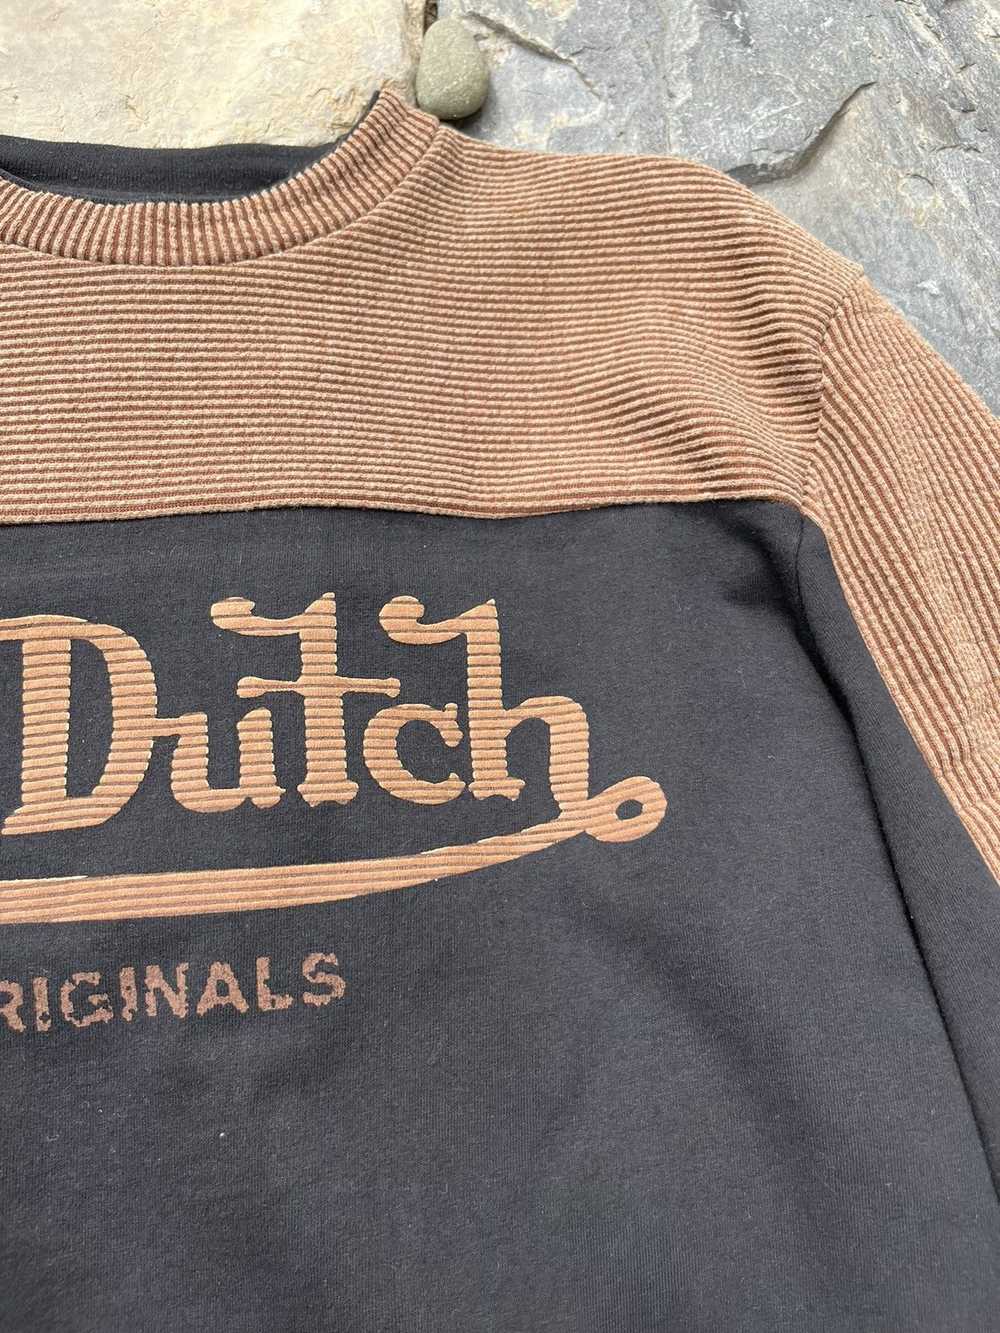 Streetwear × Vintage × Von Dutch Vintage Von Dutc… - image 8